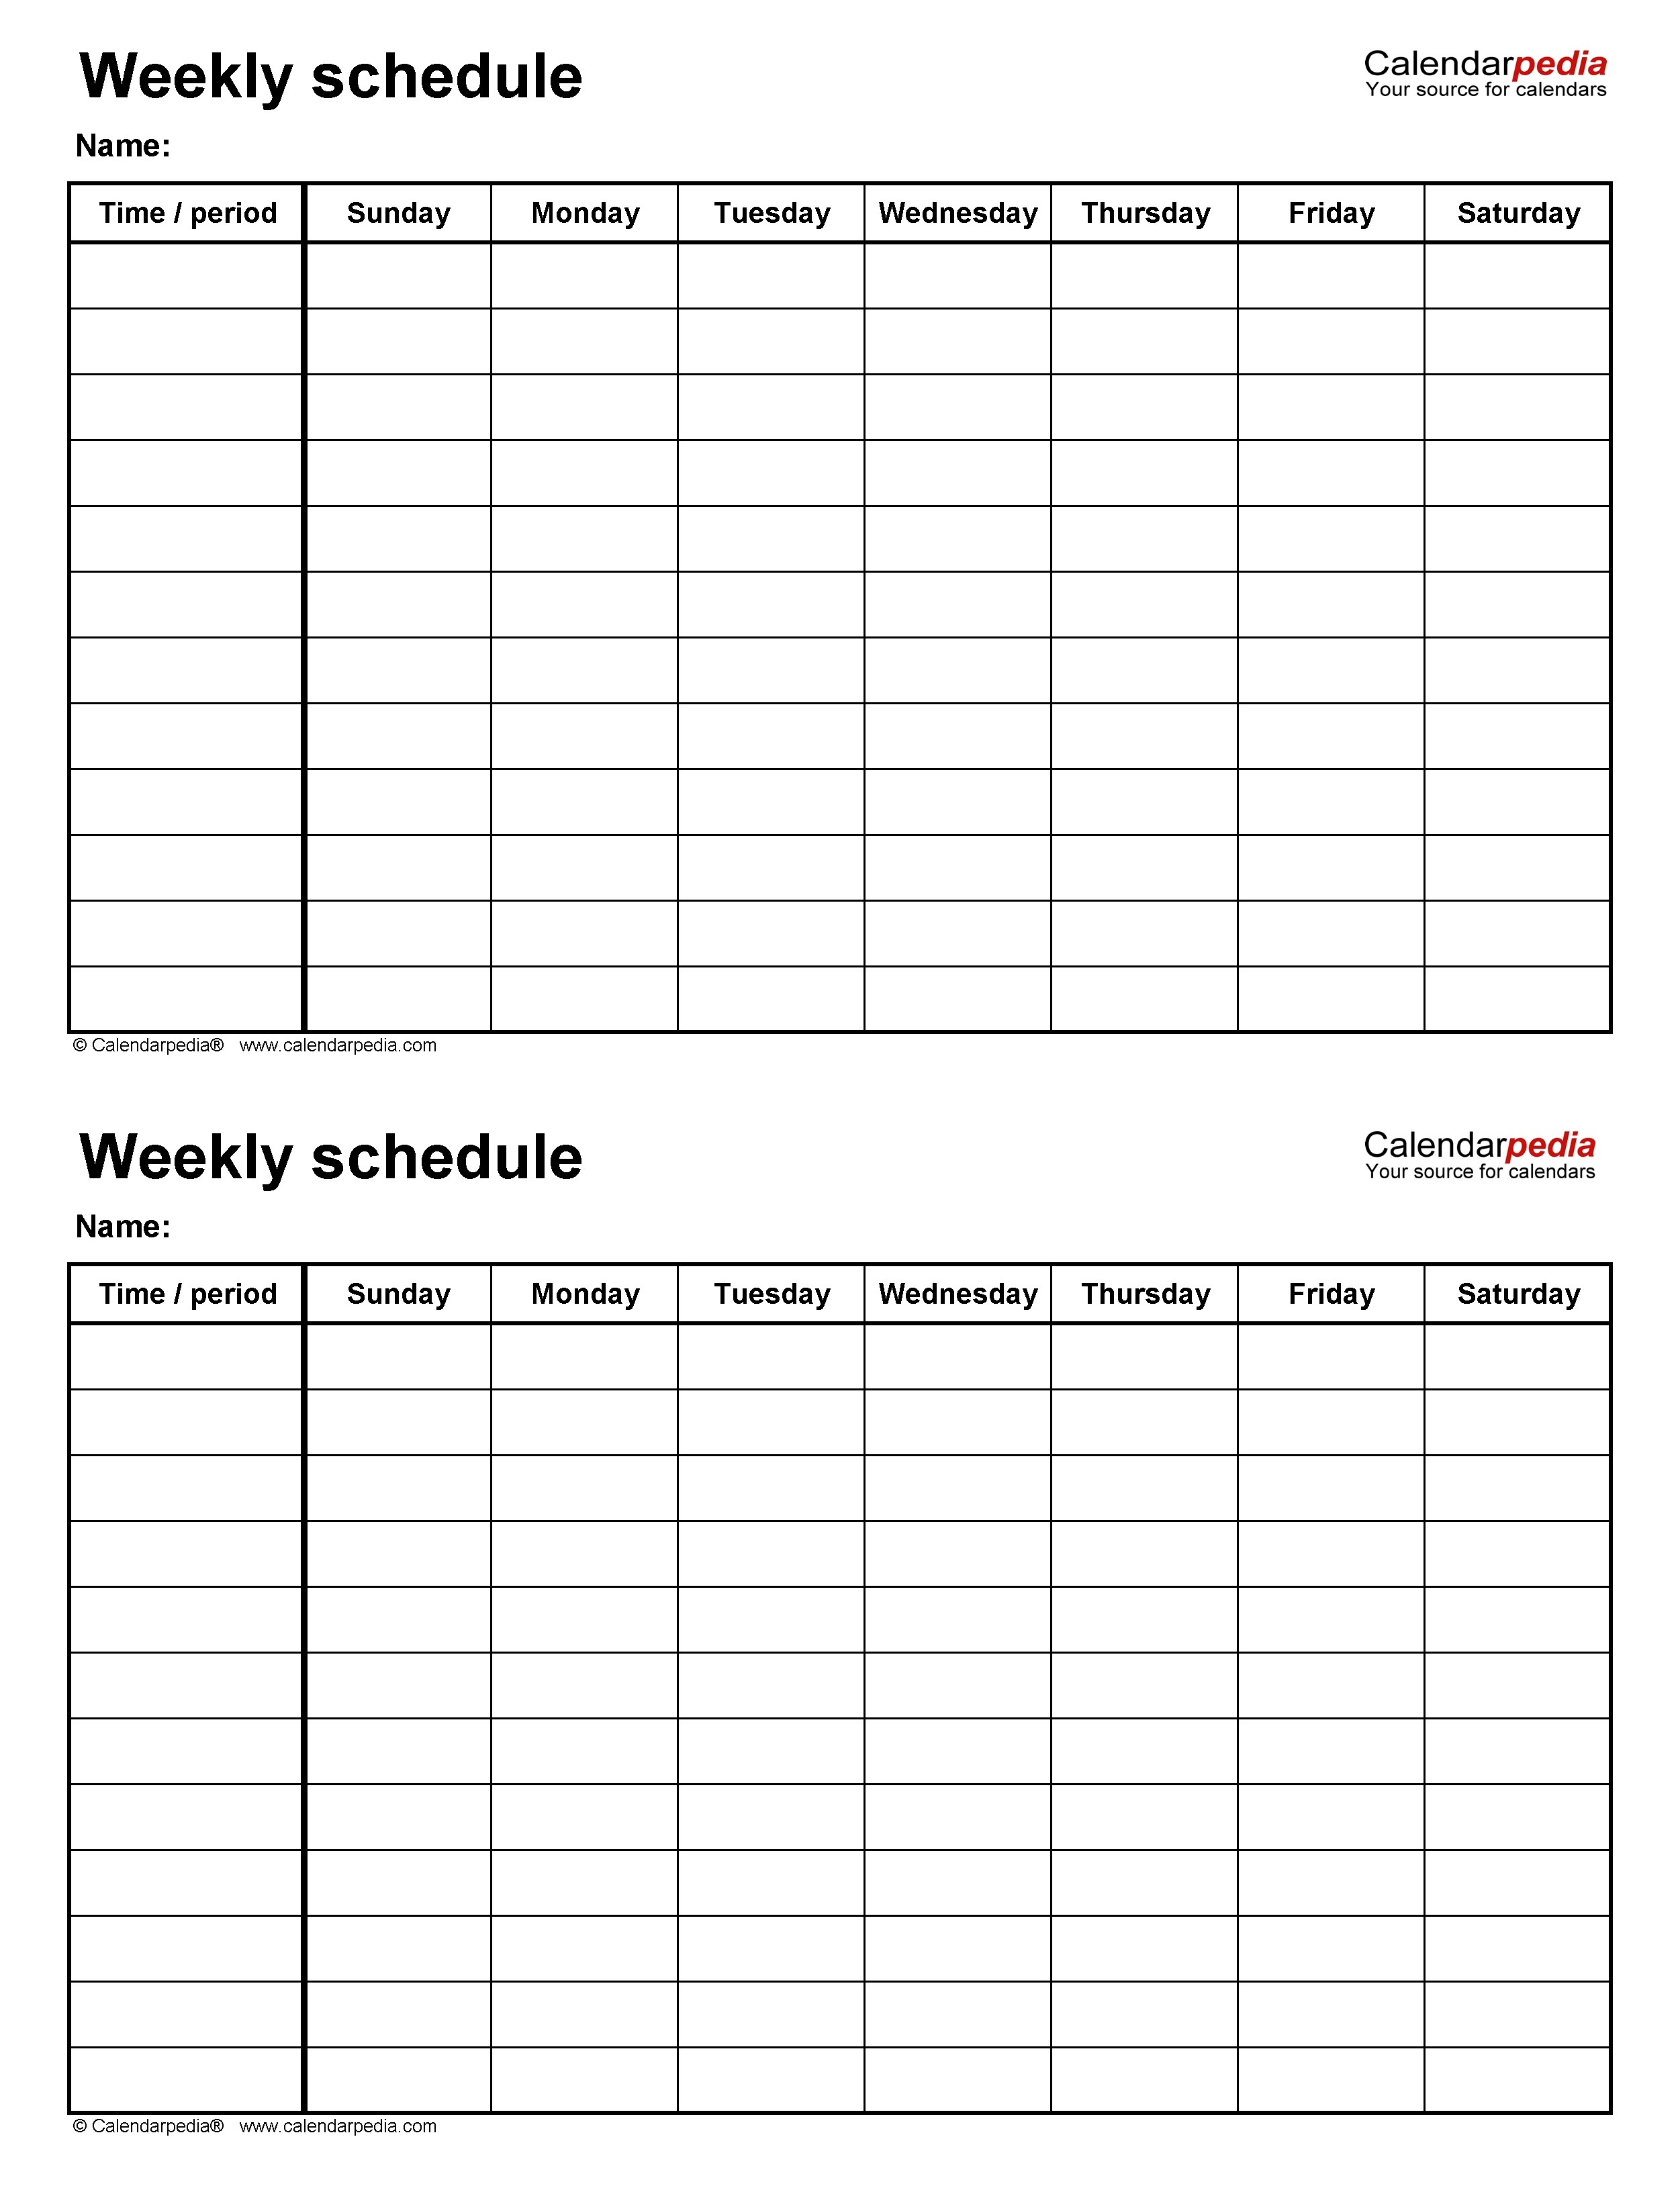 2 week schedule word template 45